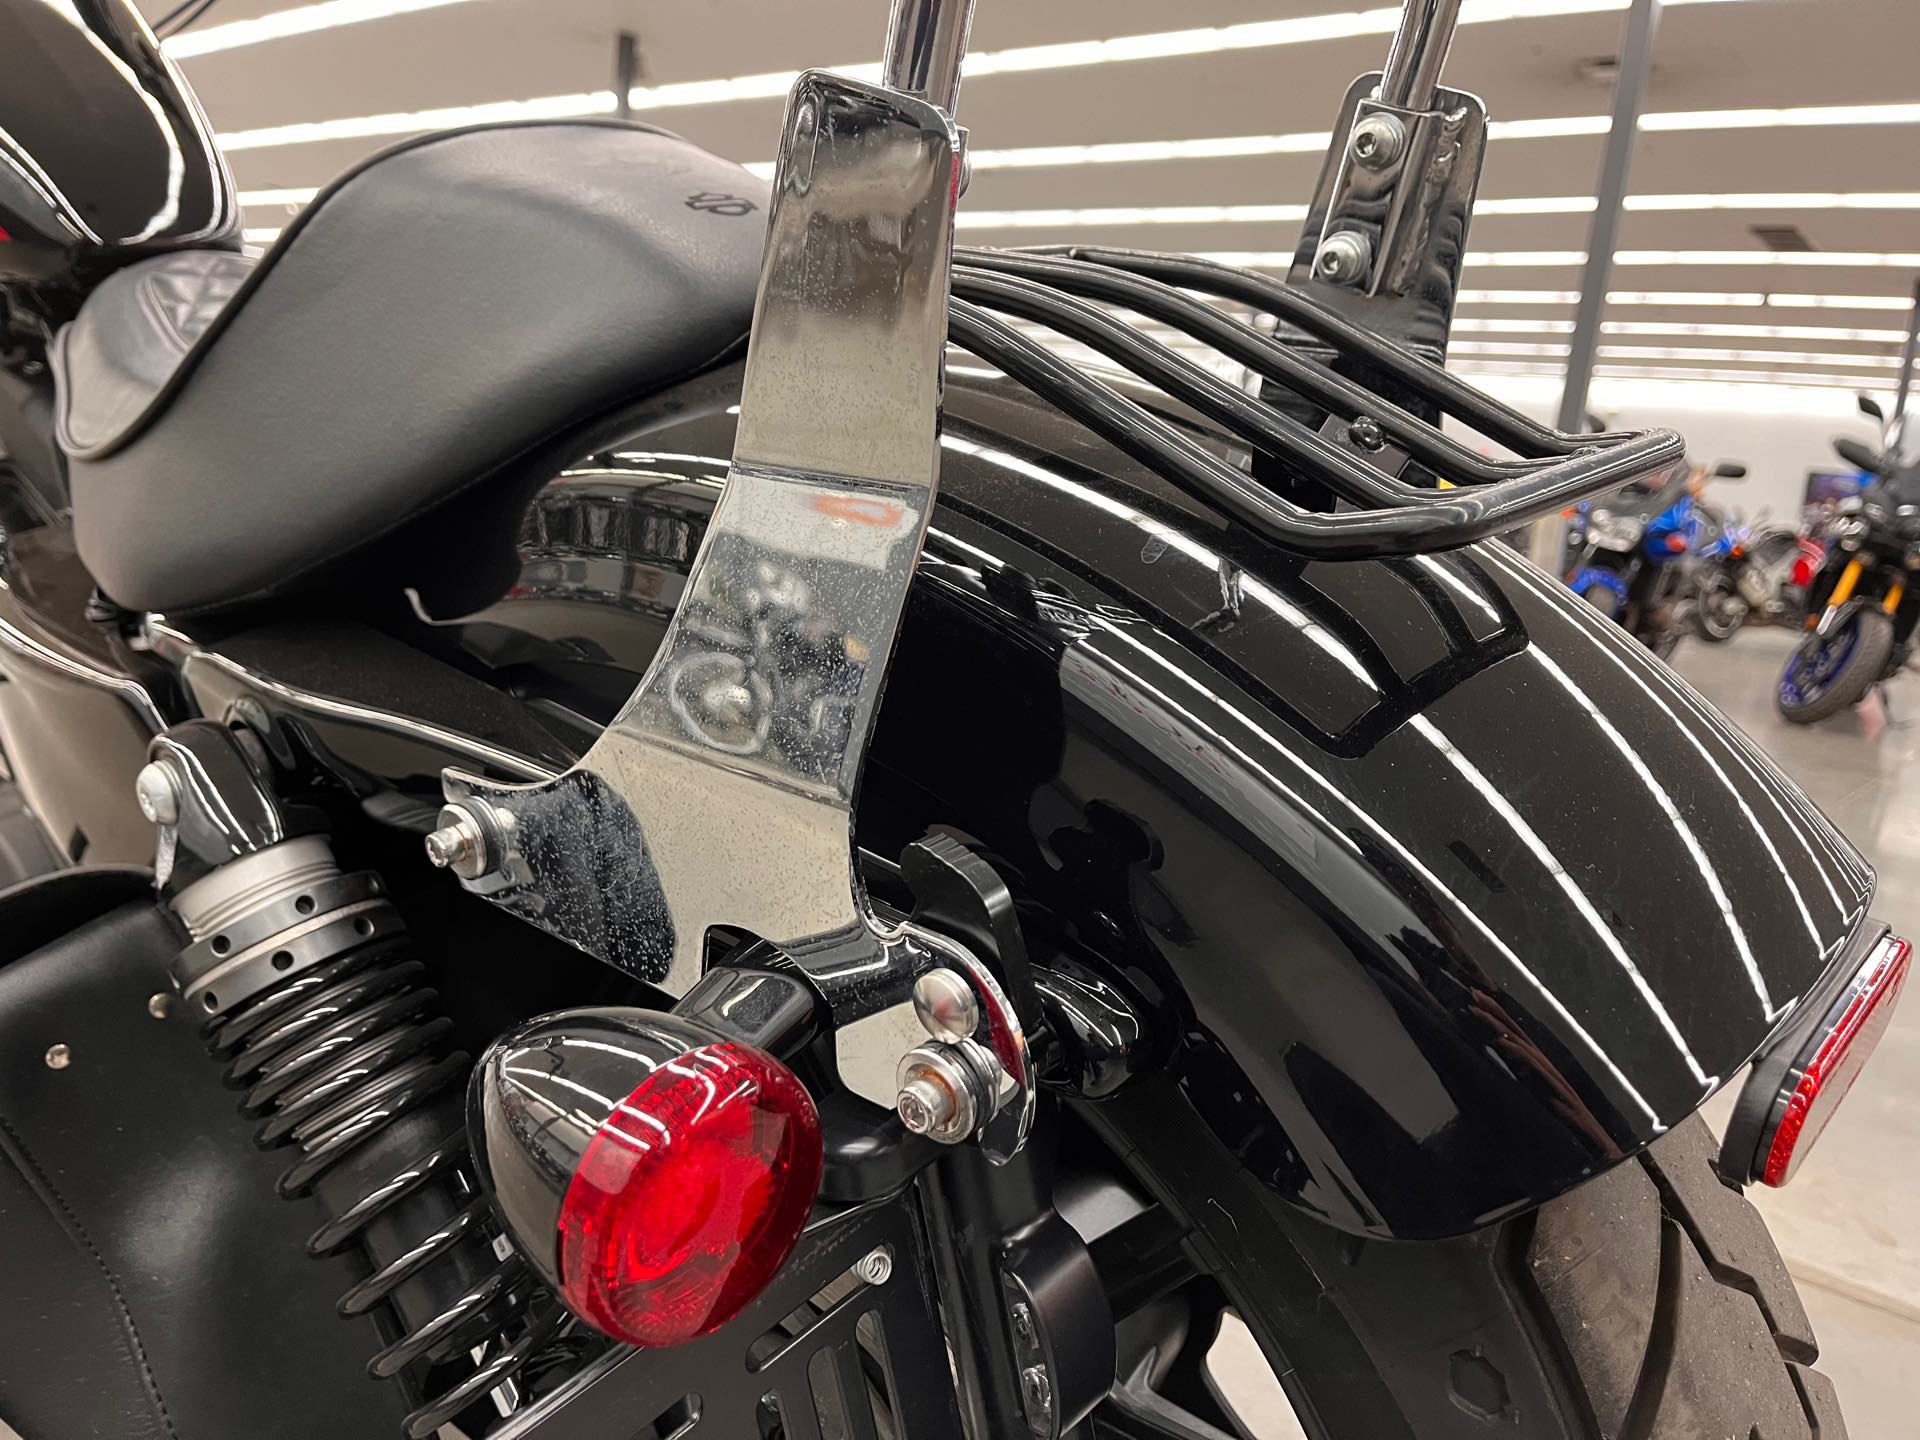 2021 Harley-Davidson Cruiser XL 1200NS Iron 1200 at Aces Motorcycles - Denver